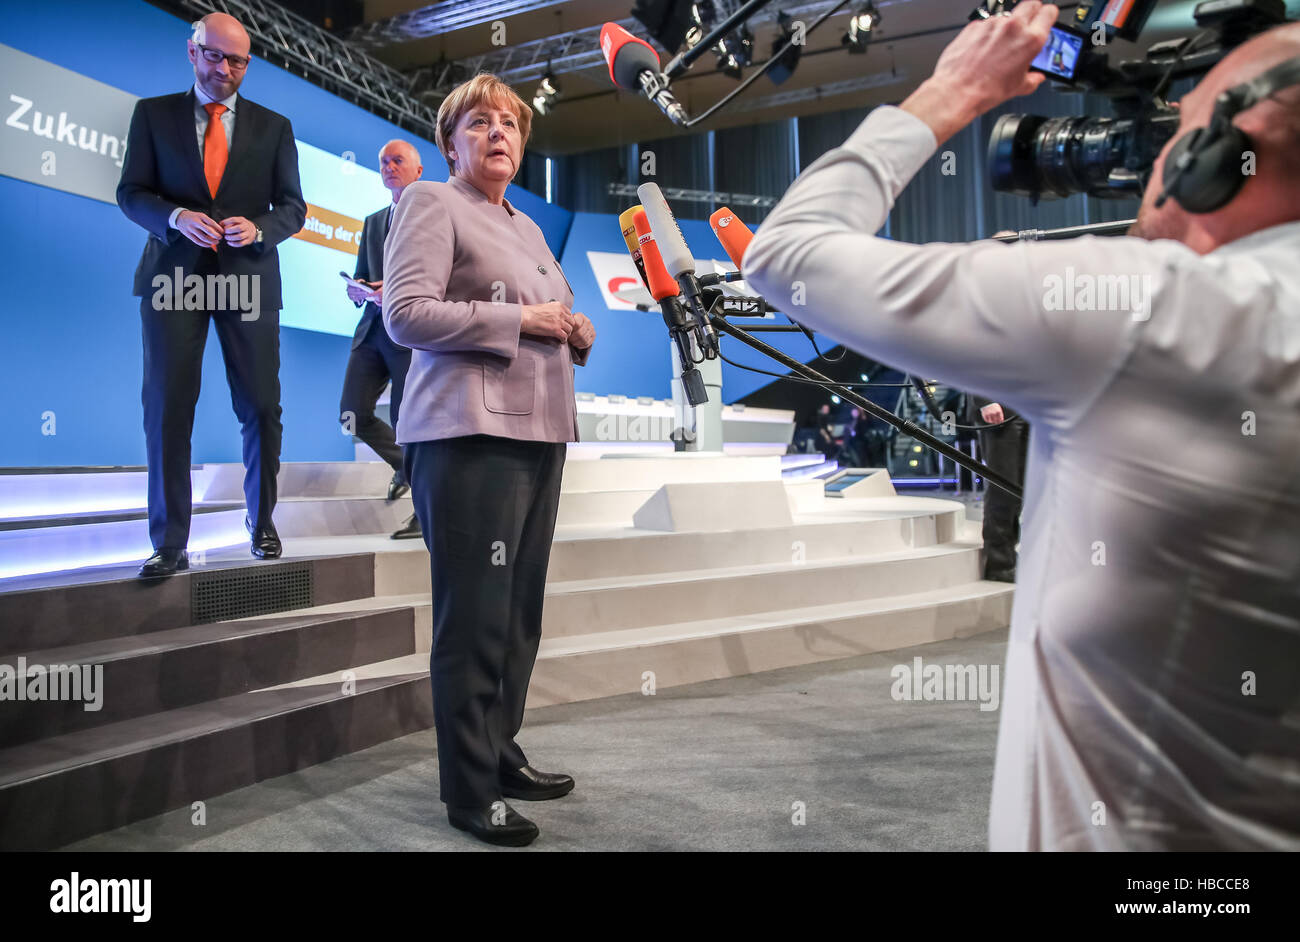 Essen, Alemania. 5 dic, 2016. La Canciller Angela Merkel (CDU), habla durante una visita a el Gruga hall antes de la Conferencia del Partido Federal de la CDU en Essen, Alemania, 5 de diciembre de 2016. La conferencia del partido durará hasta el 7 de diciembre de 2016. Foto: Michael Kappeler/dpa/Alamy Live News Foto de stock